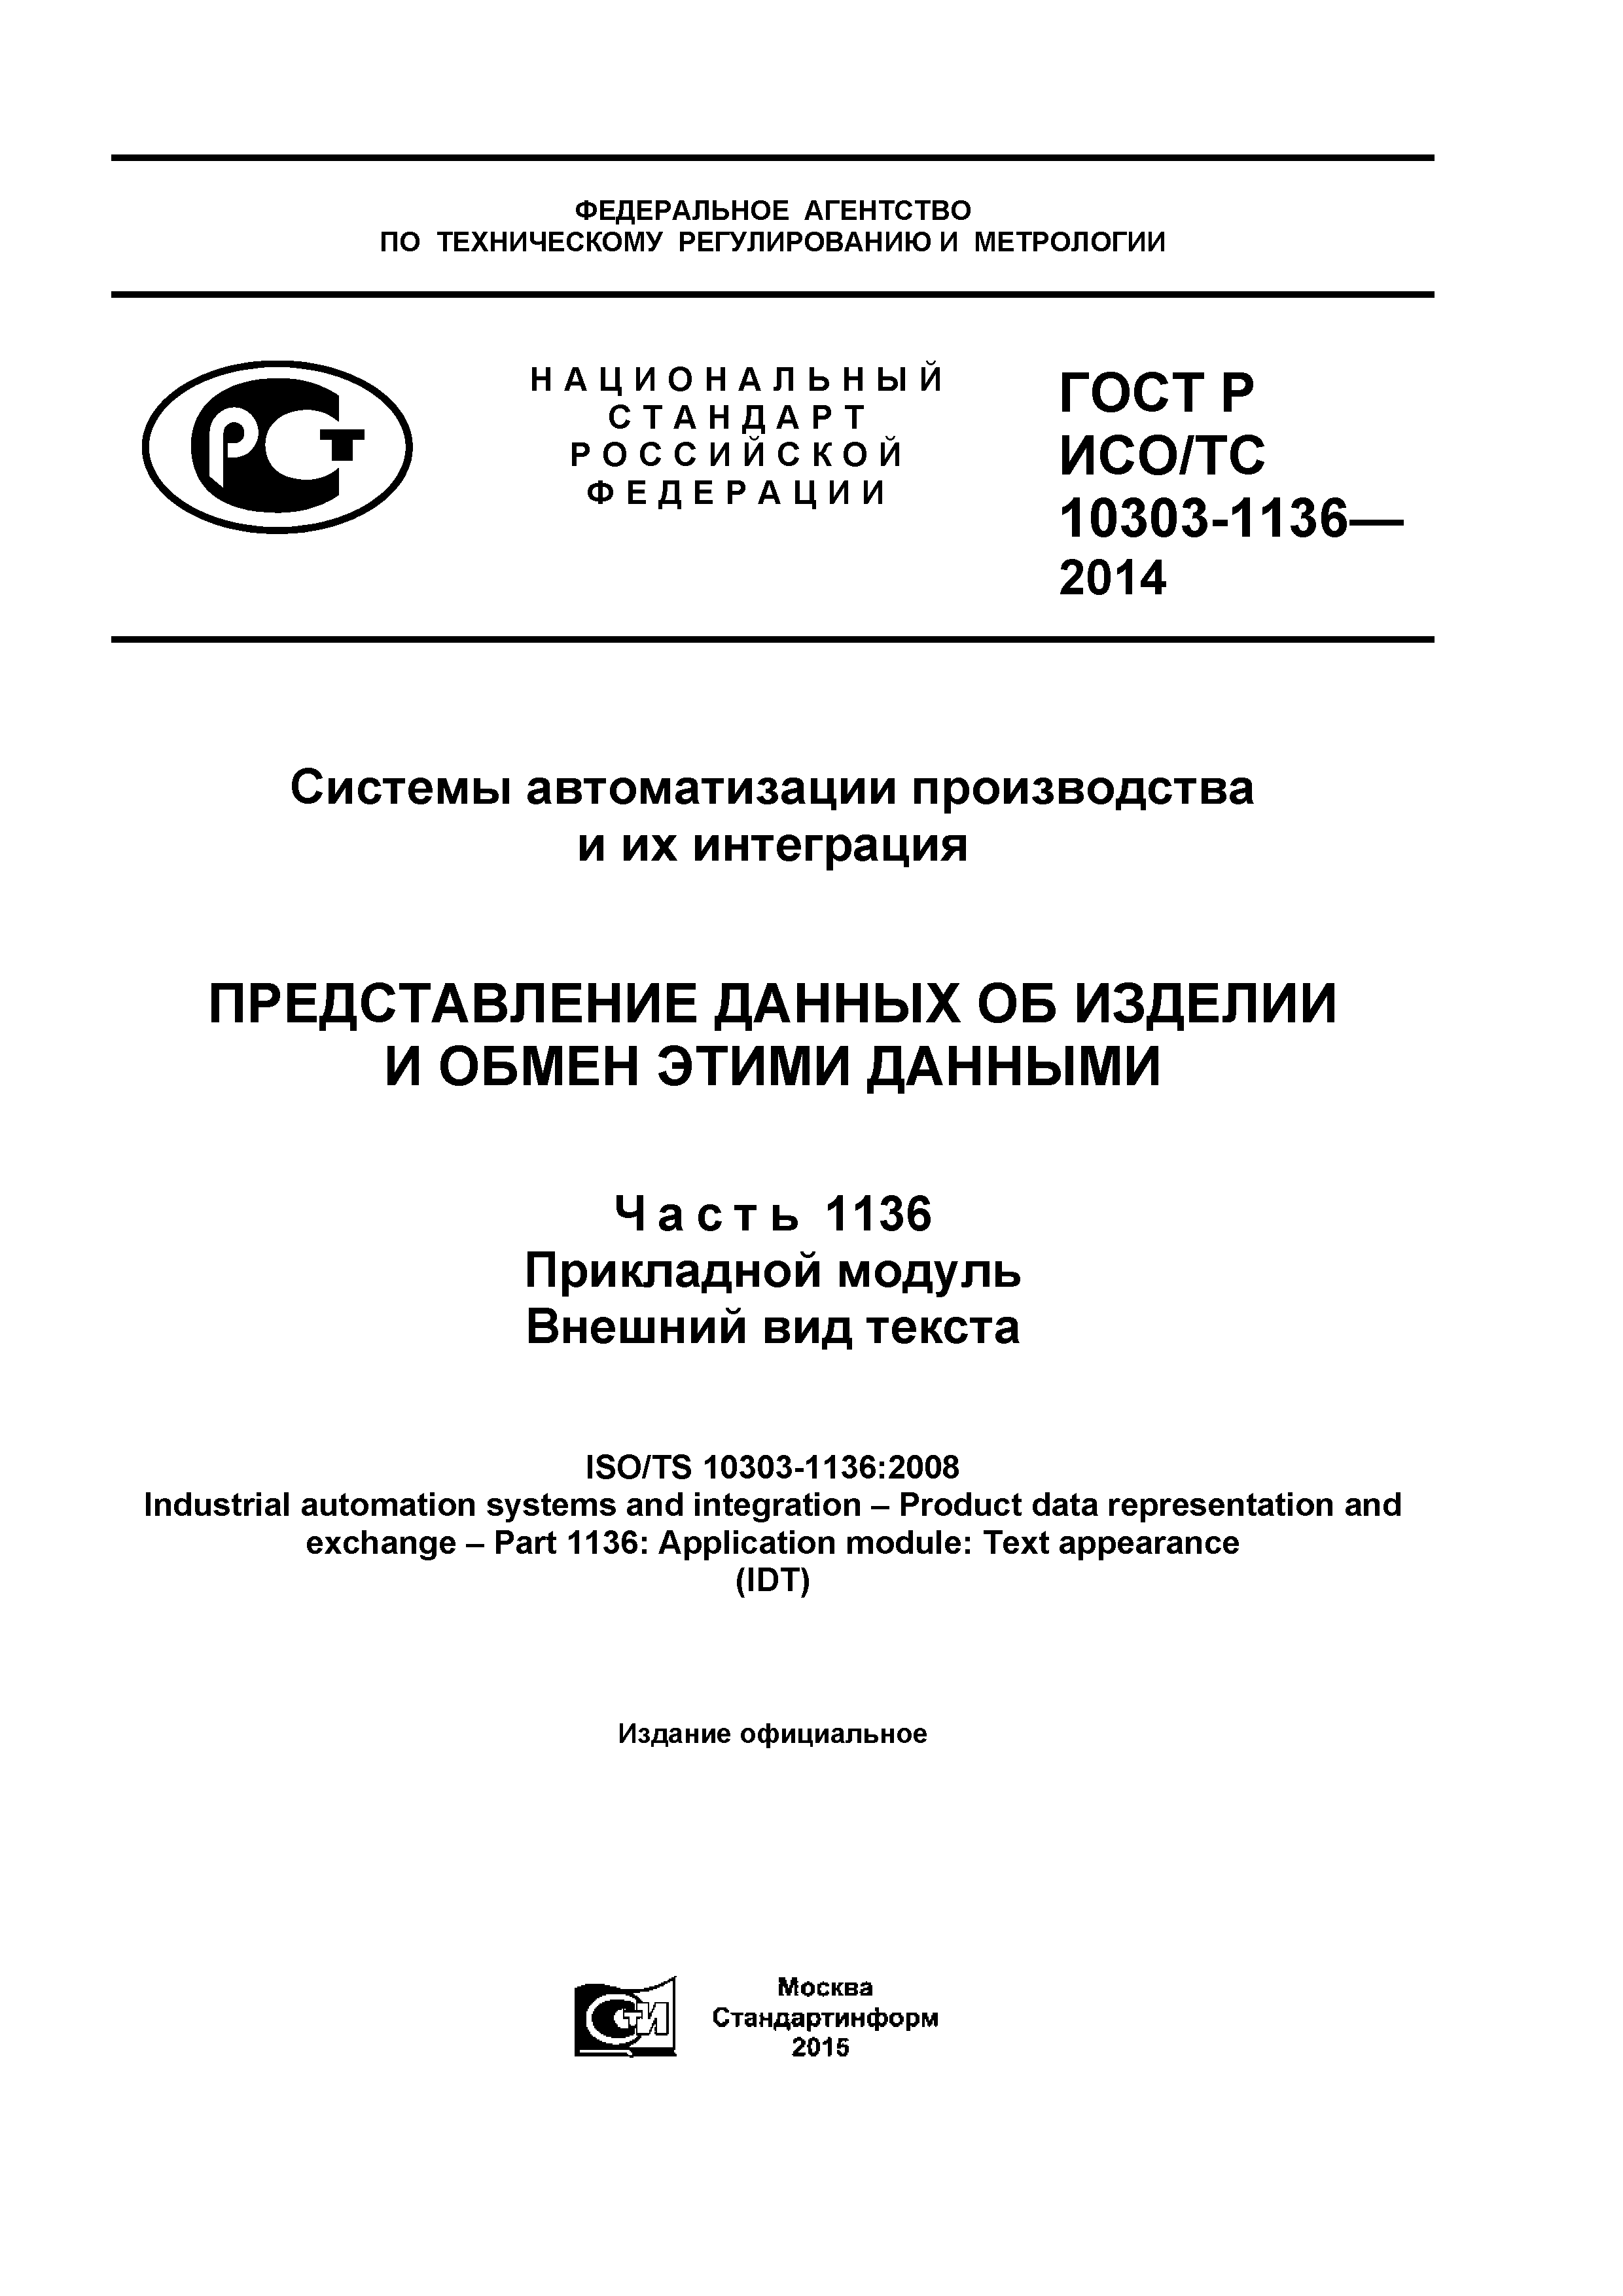 ГОСТ Р ИСО/ТС 10303-1136-2014